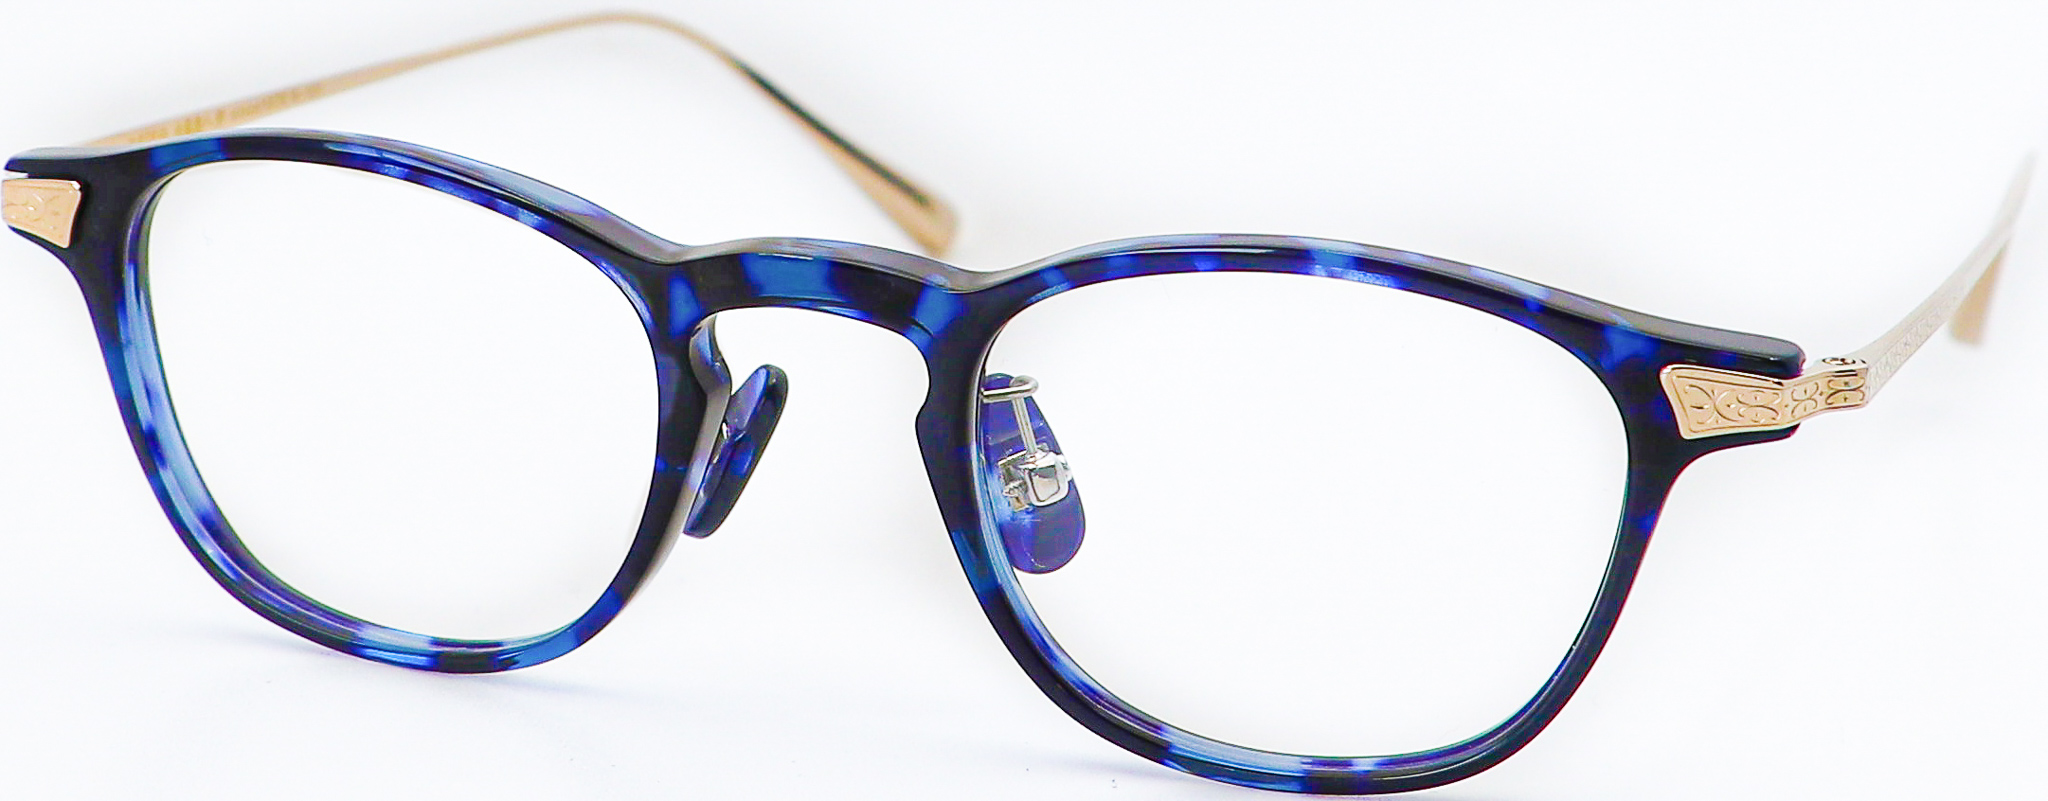 眼鏡のカラータイプC-3 Blue-Tortoise/Gold